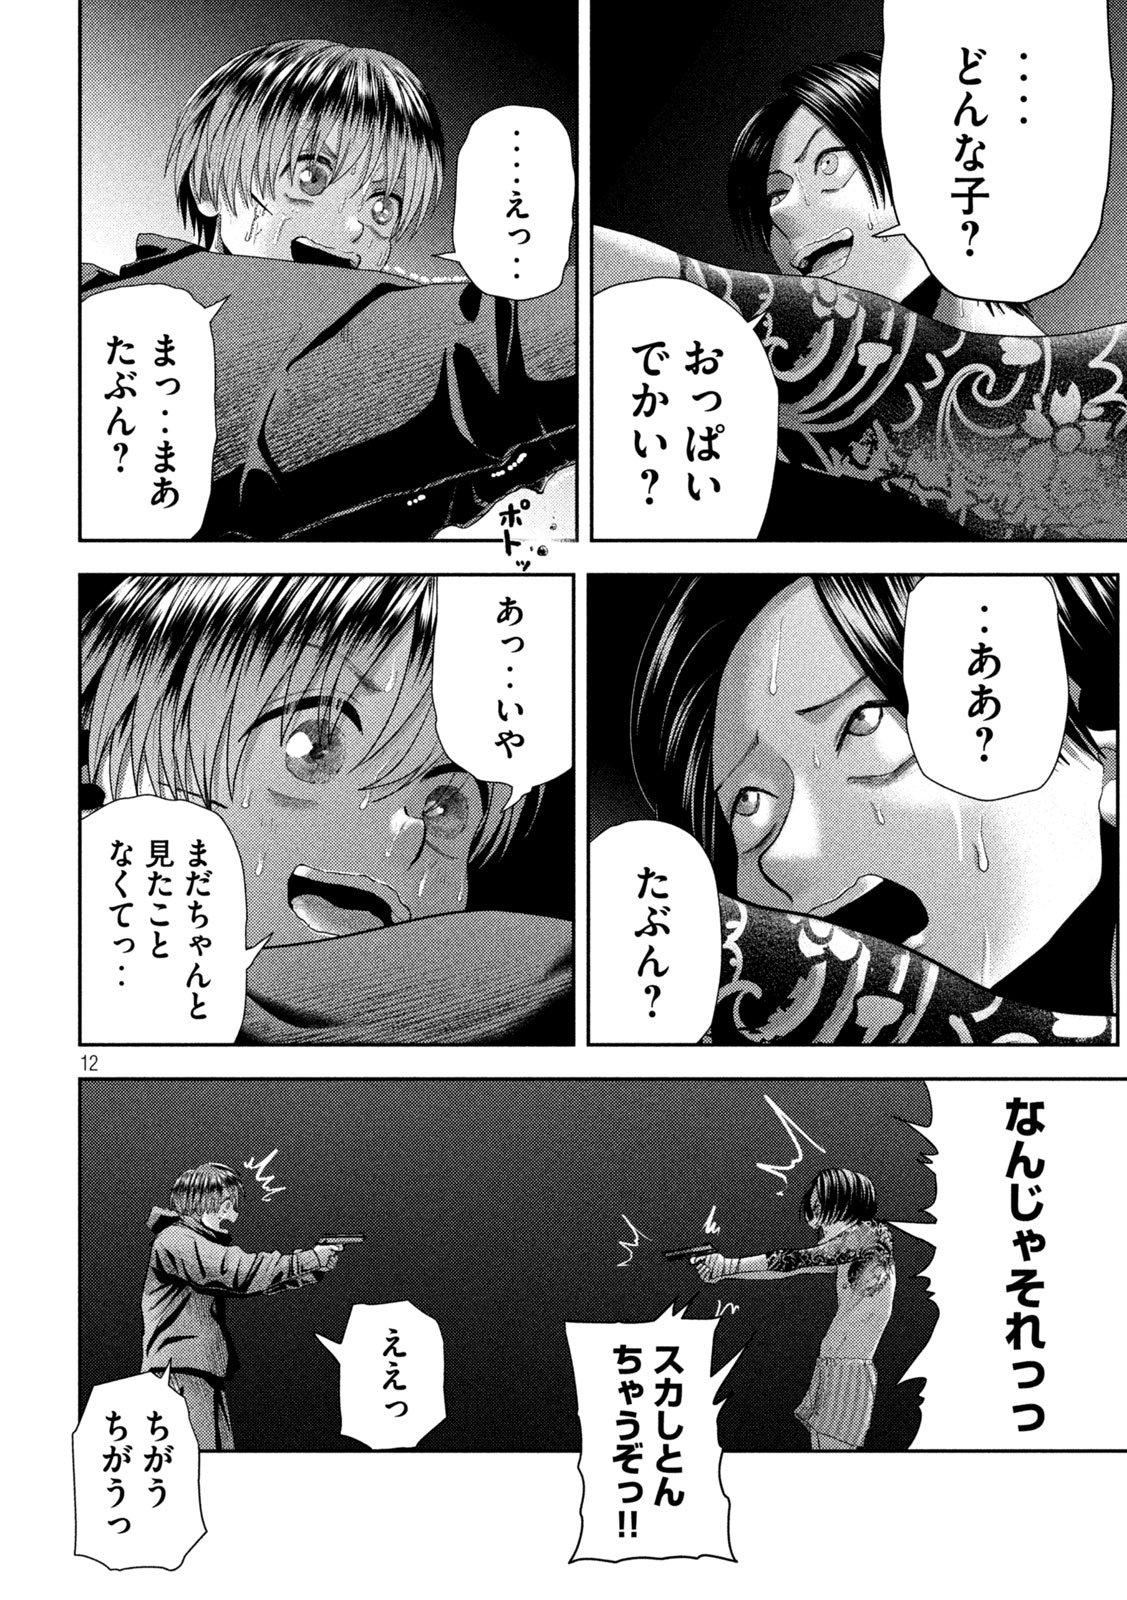 Nezumi no Koi - Chapter 33 - Page 12